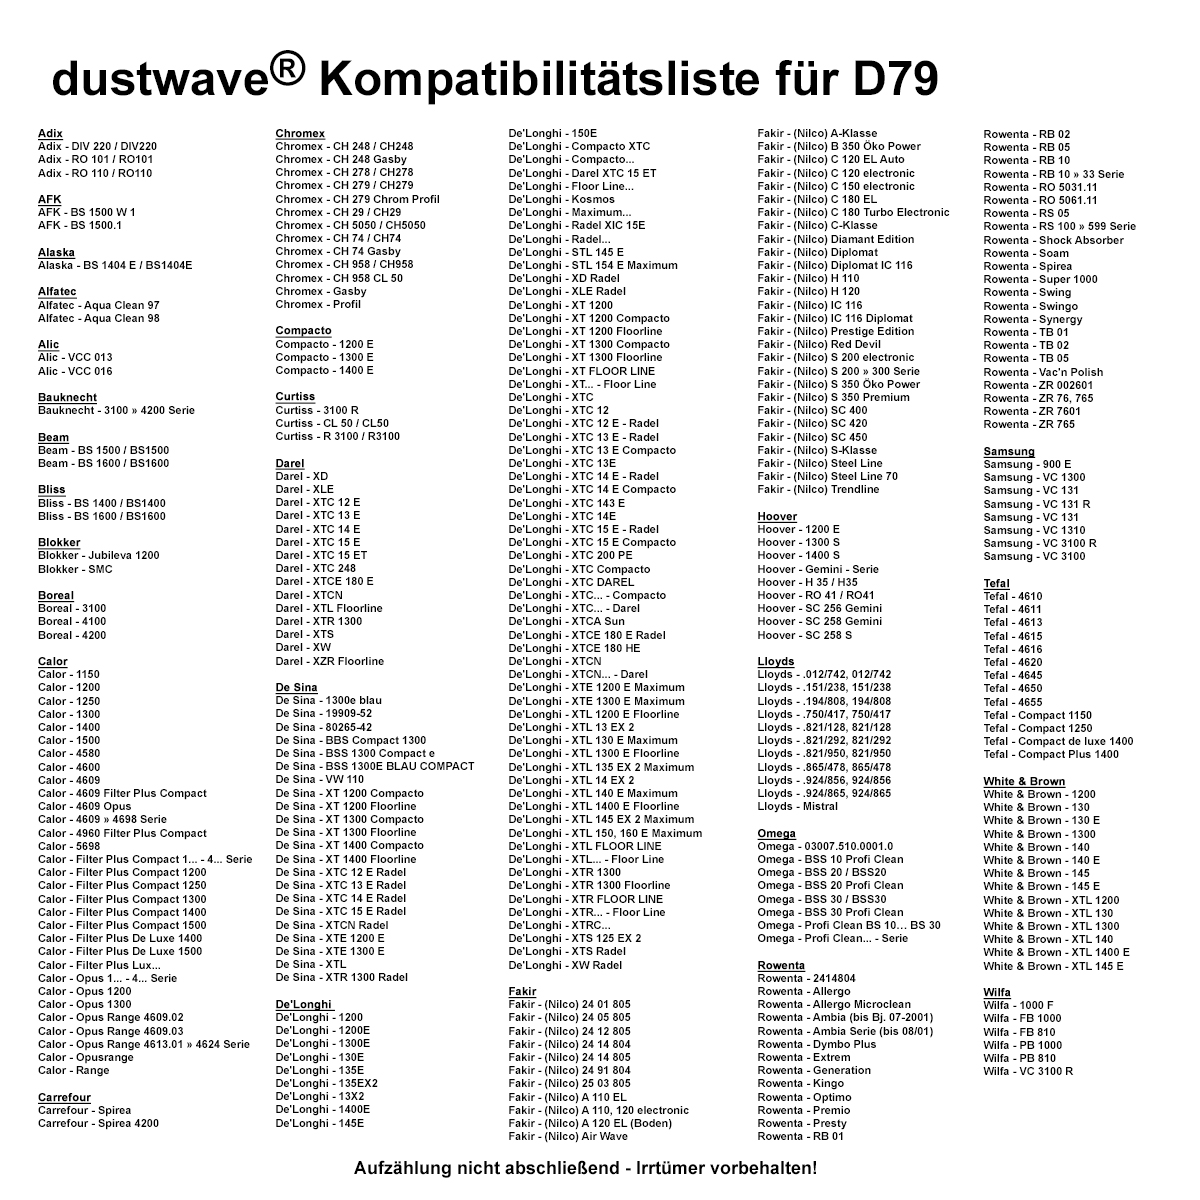 Dustwave® 10 Staubsaugerbeutel für Hoover Gemini - Serie - hocheffizient, mehrlagiges Mikrovlies mit Hygieneverschluss - Made in Germany